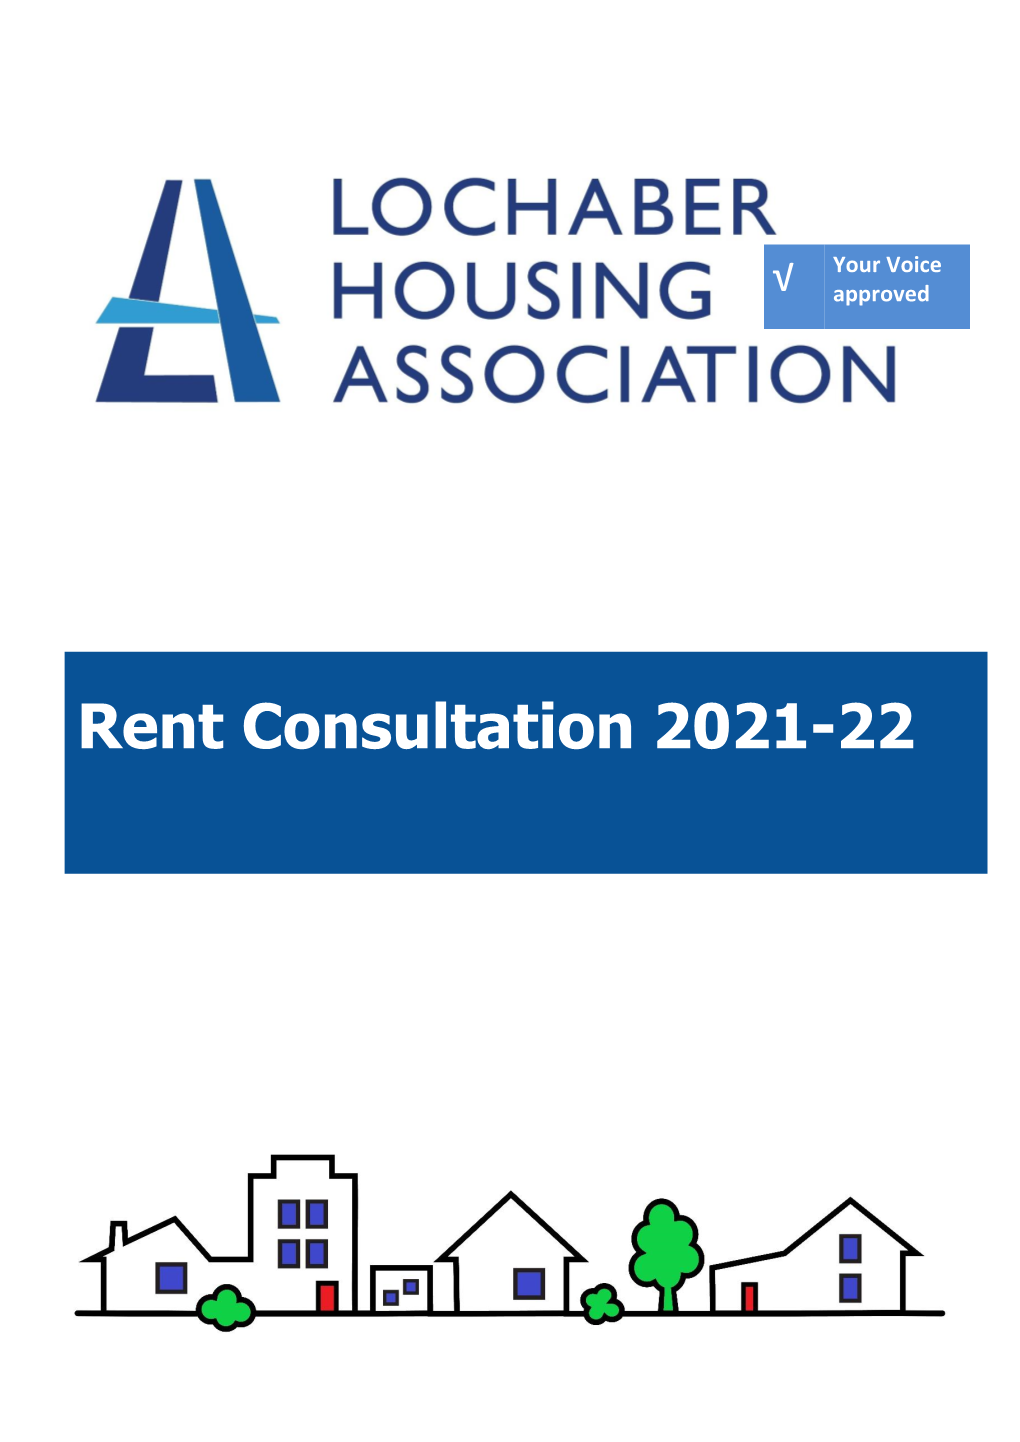 Rent Consultation 2021-2022